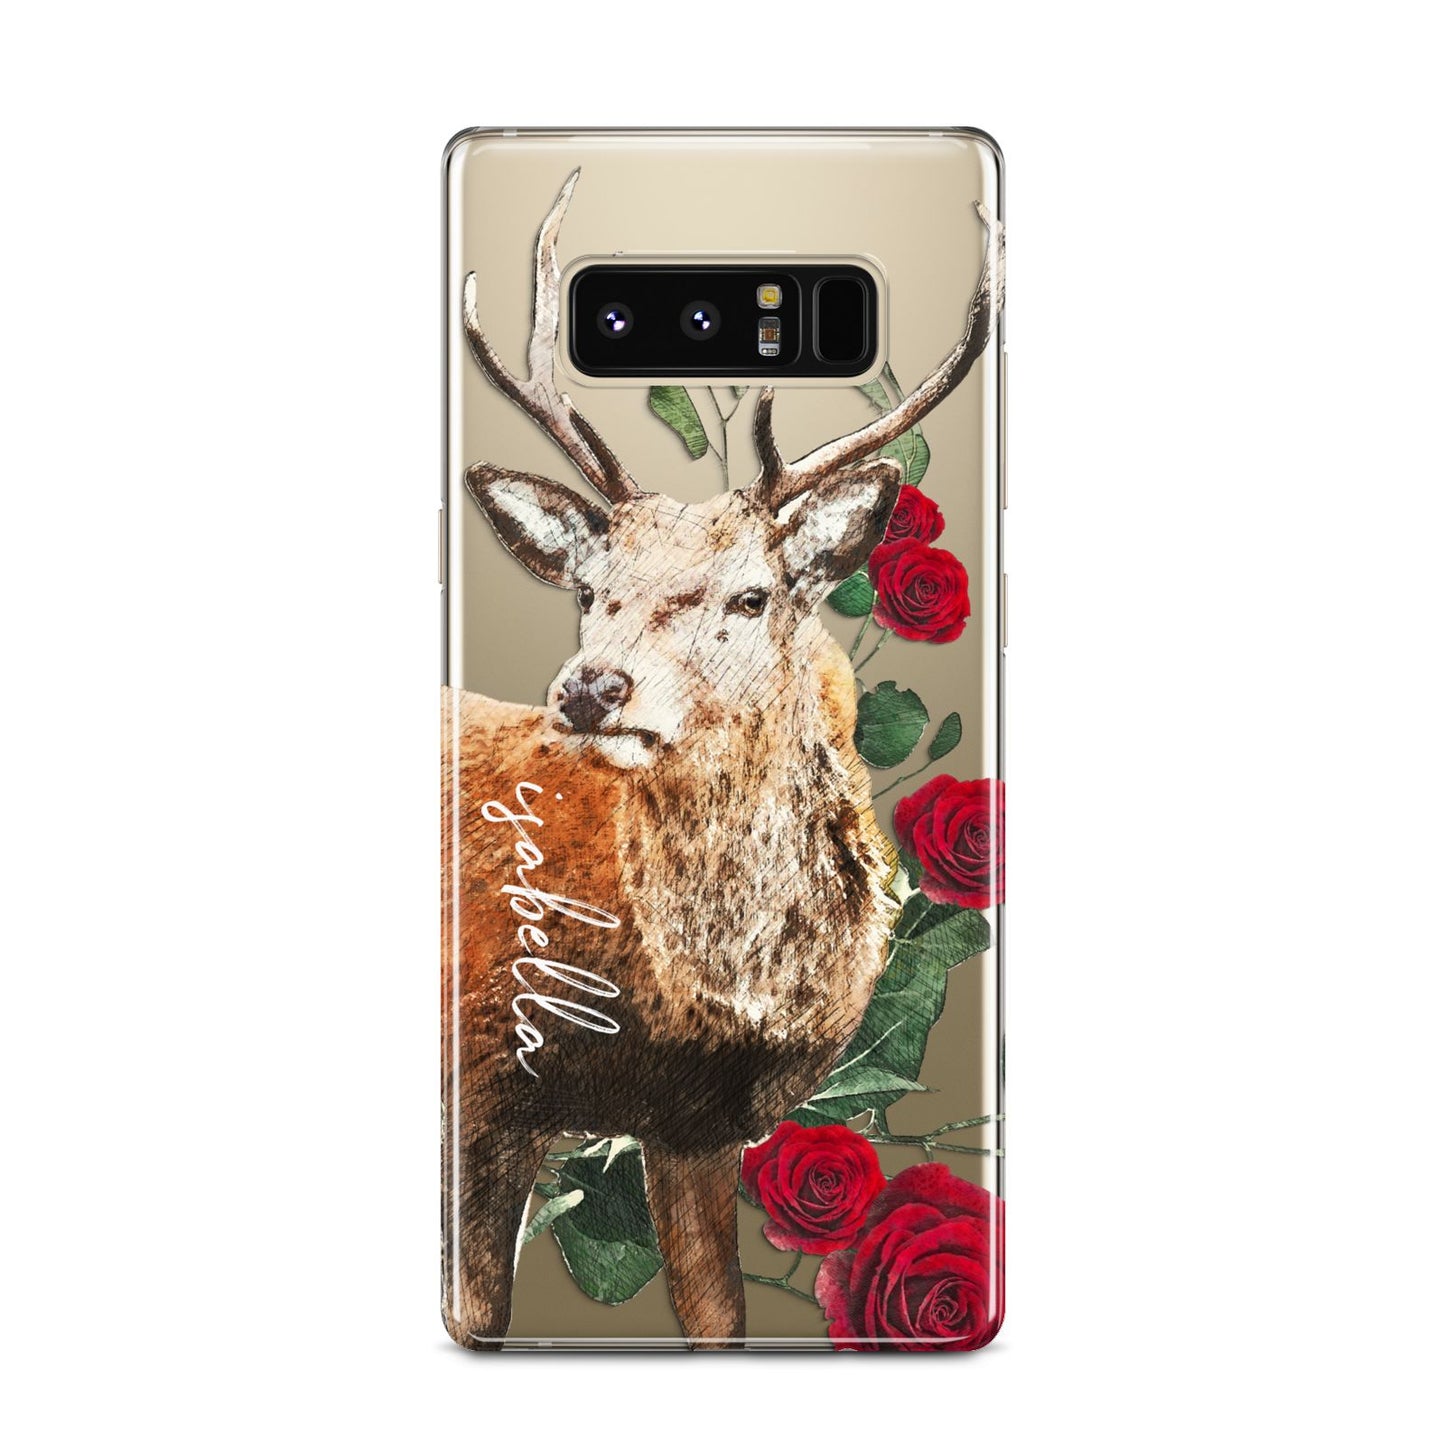 Personalised Deer Name Samsung Galaxy Note 8 Case